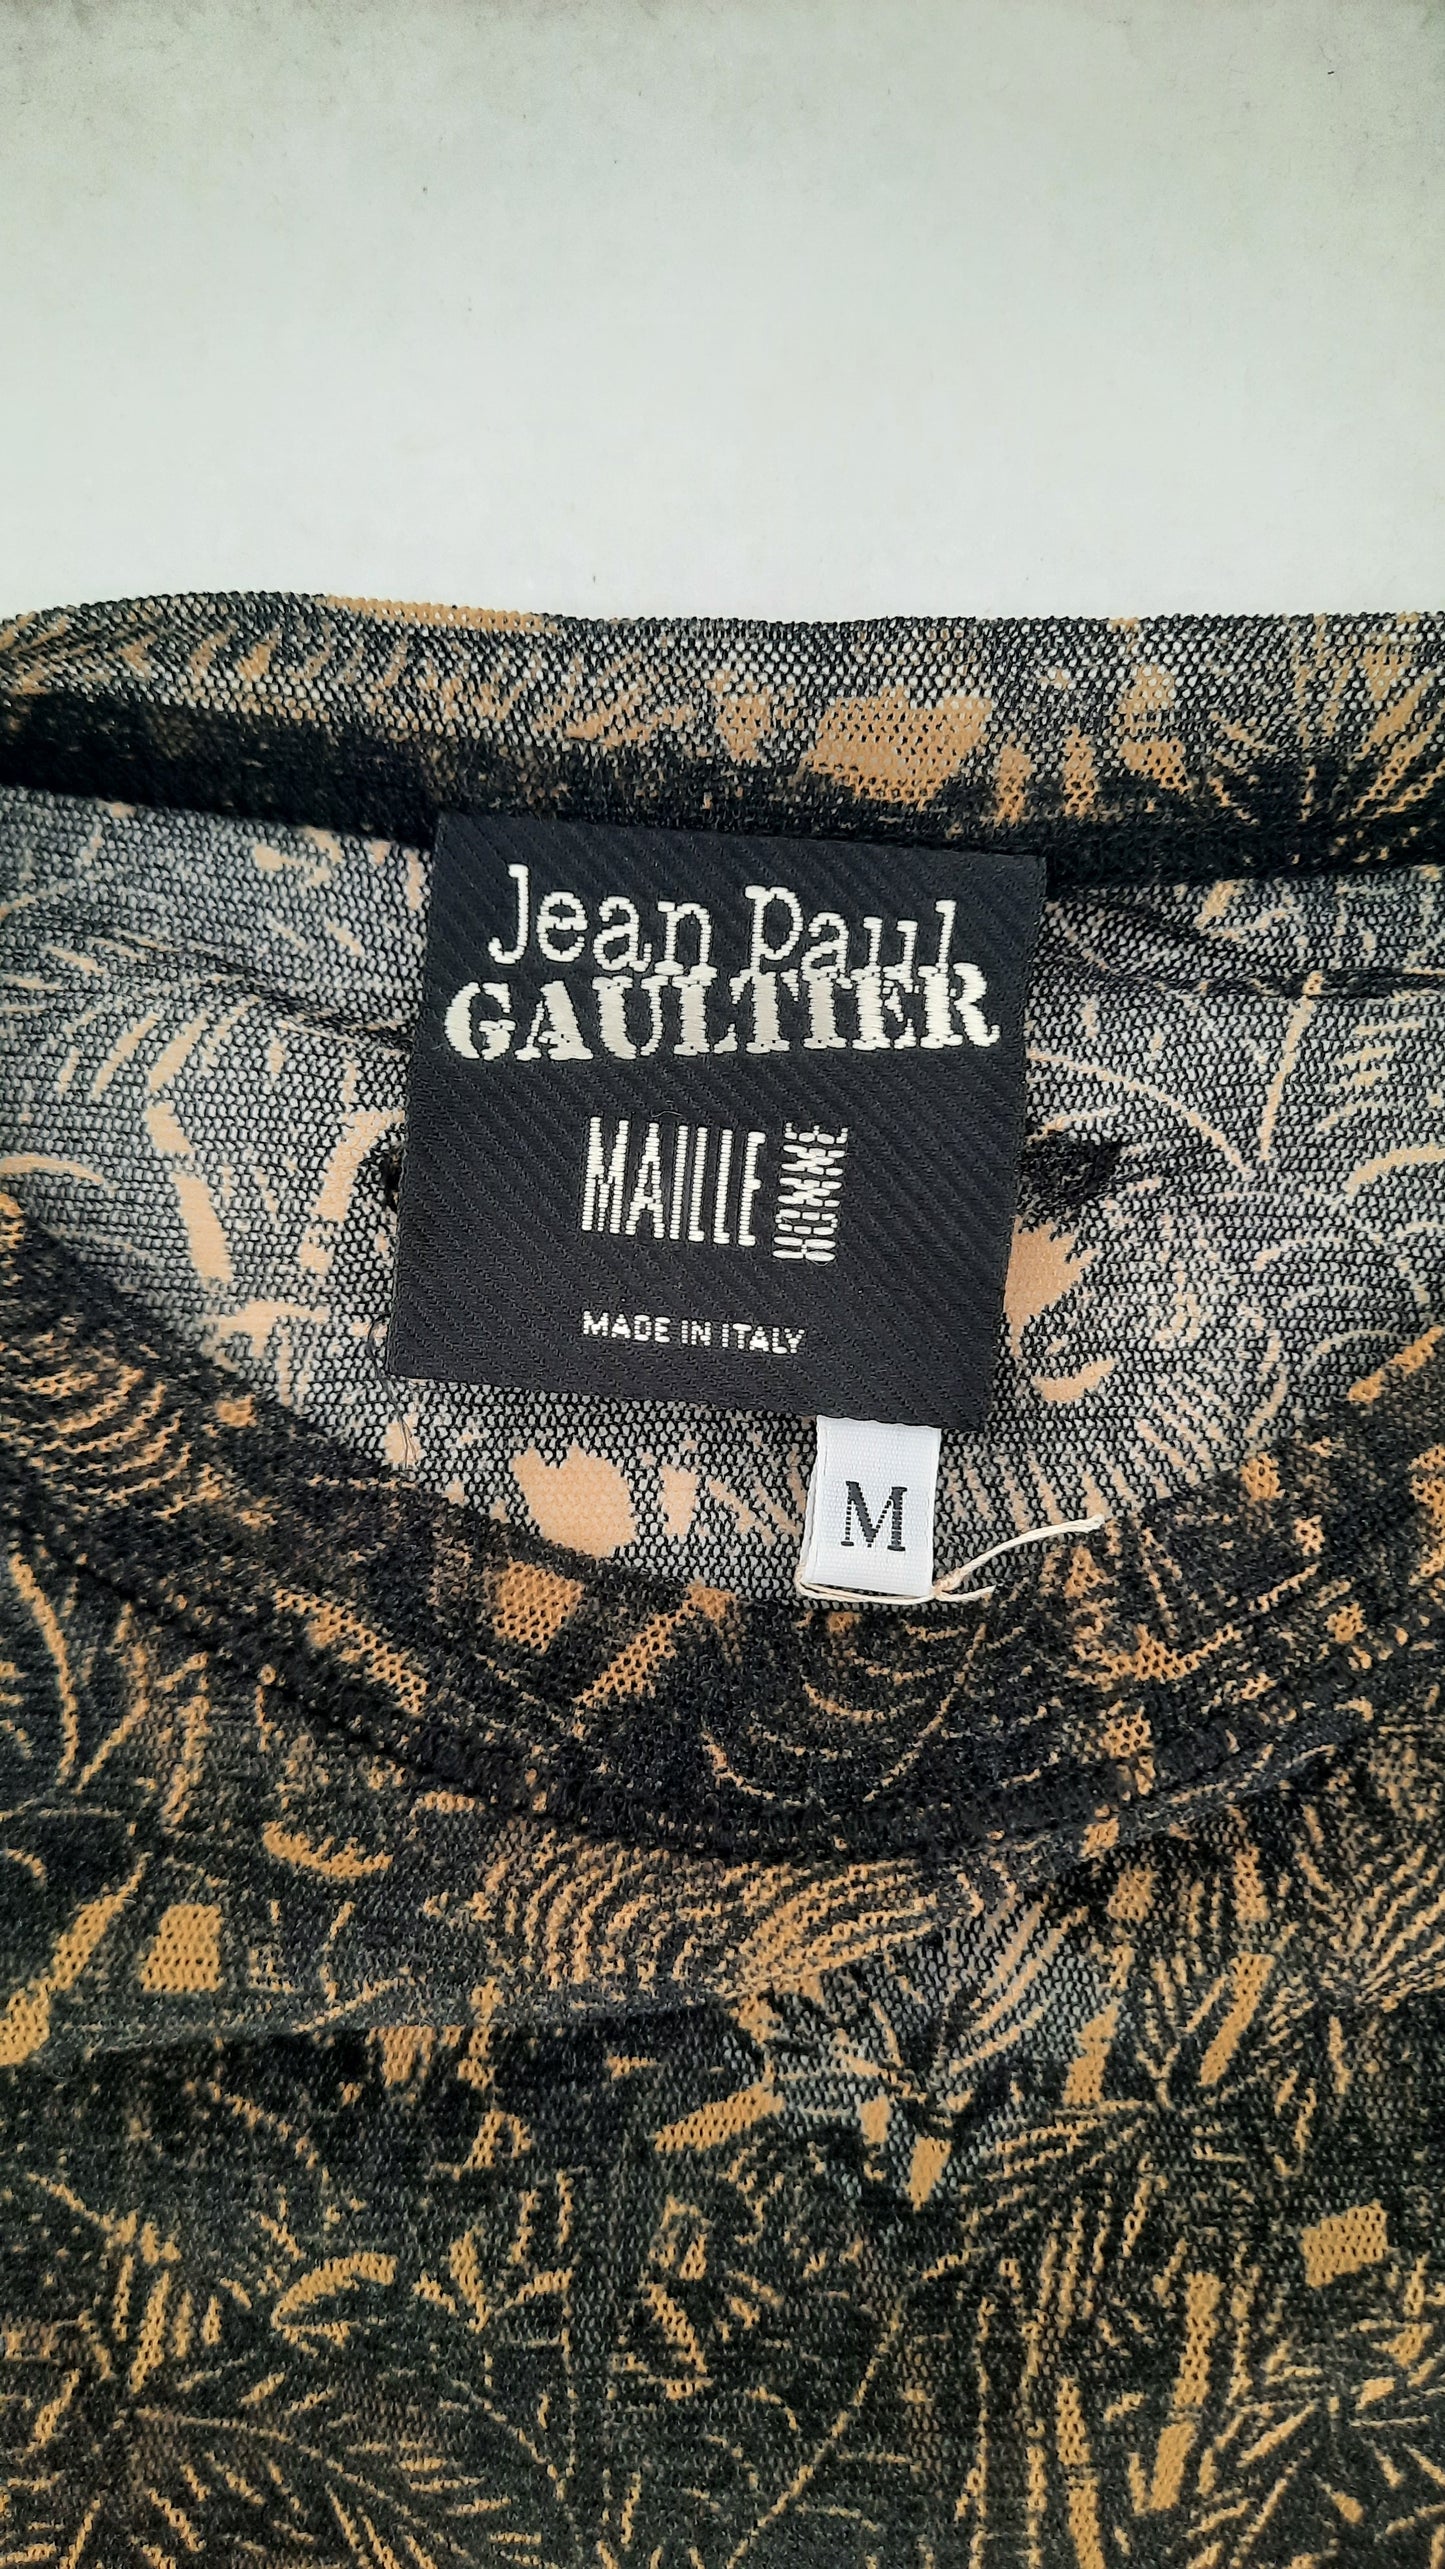 Vintage Rare Jean Paul Gaultier T-shirt